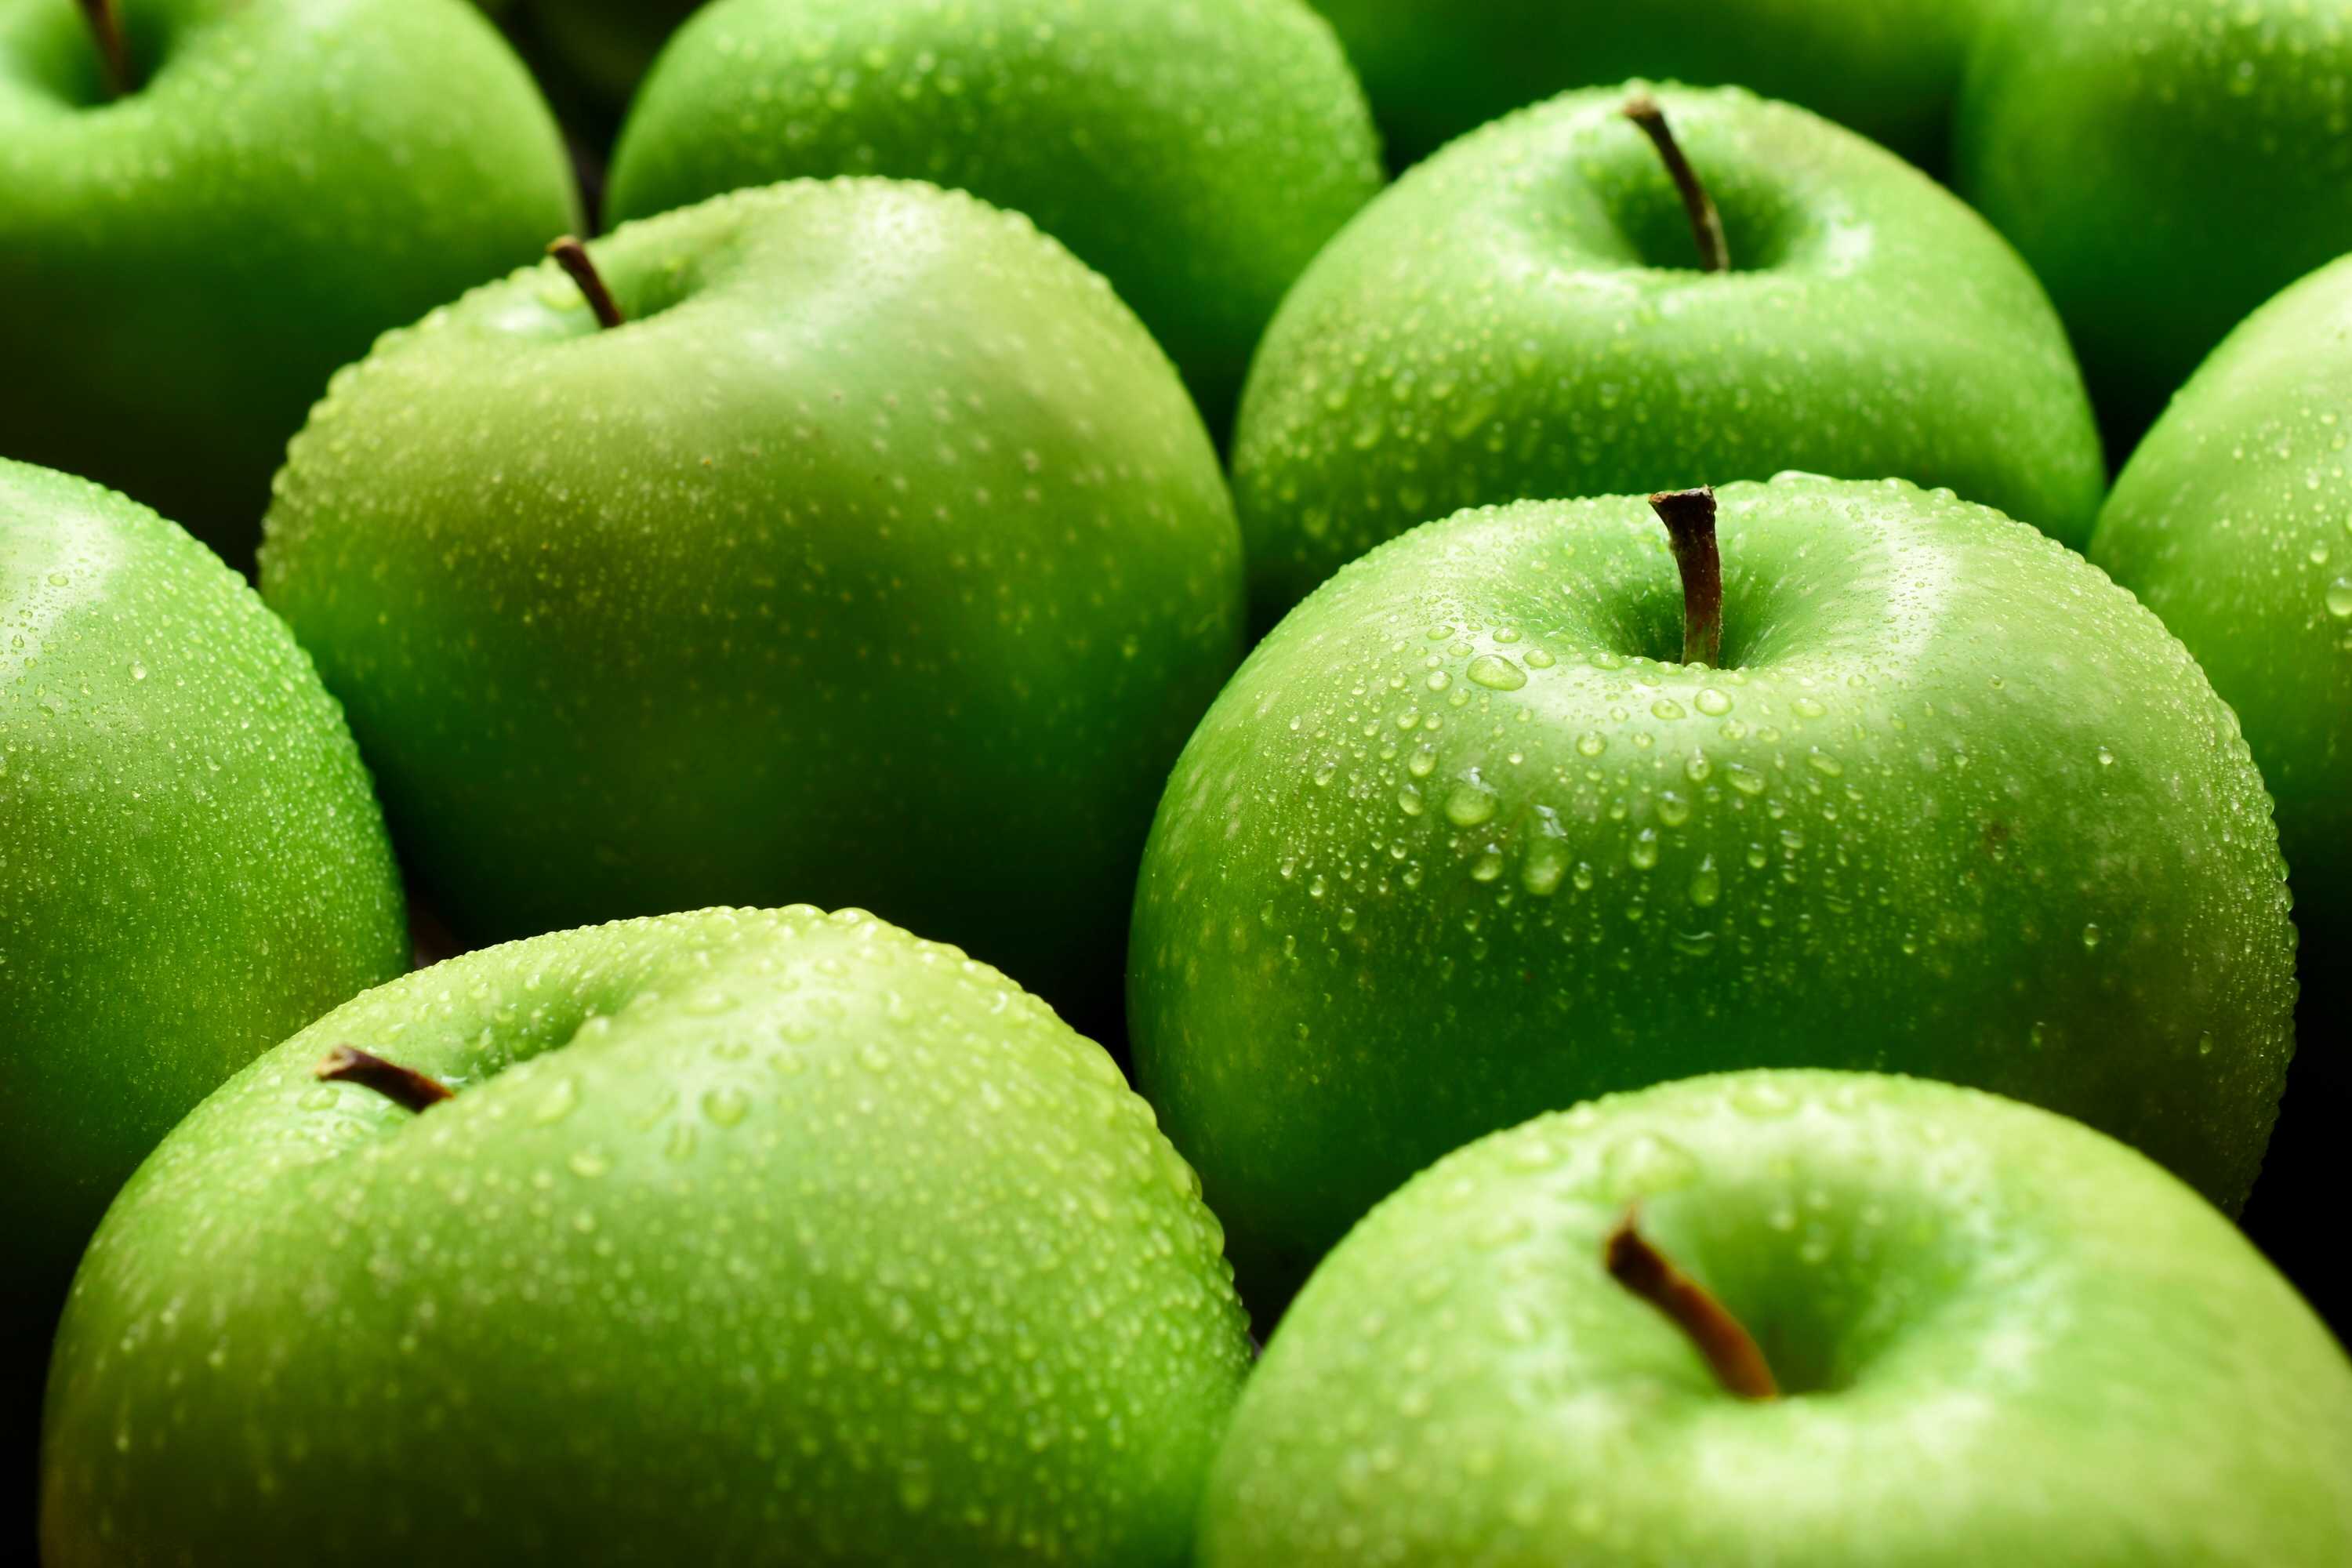 microsoft, demandez à un professionnel de la nutrition : les pommes sont-elles meilleures que les poires?